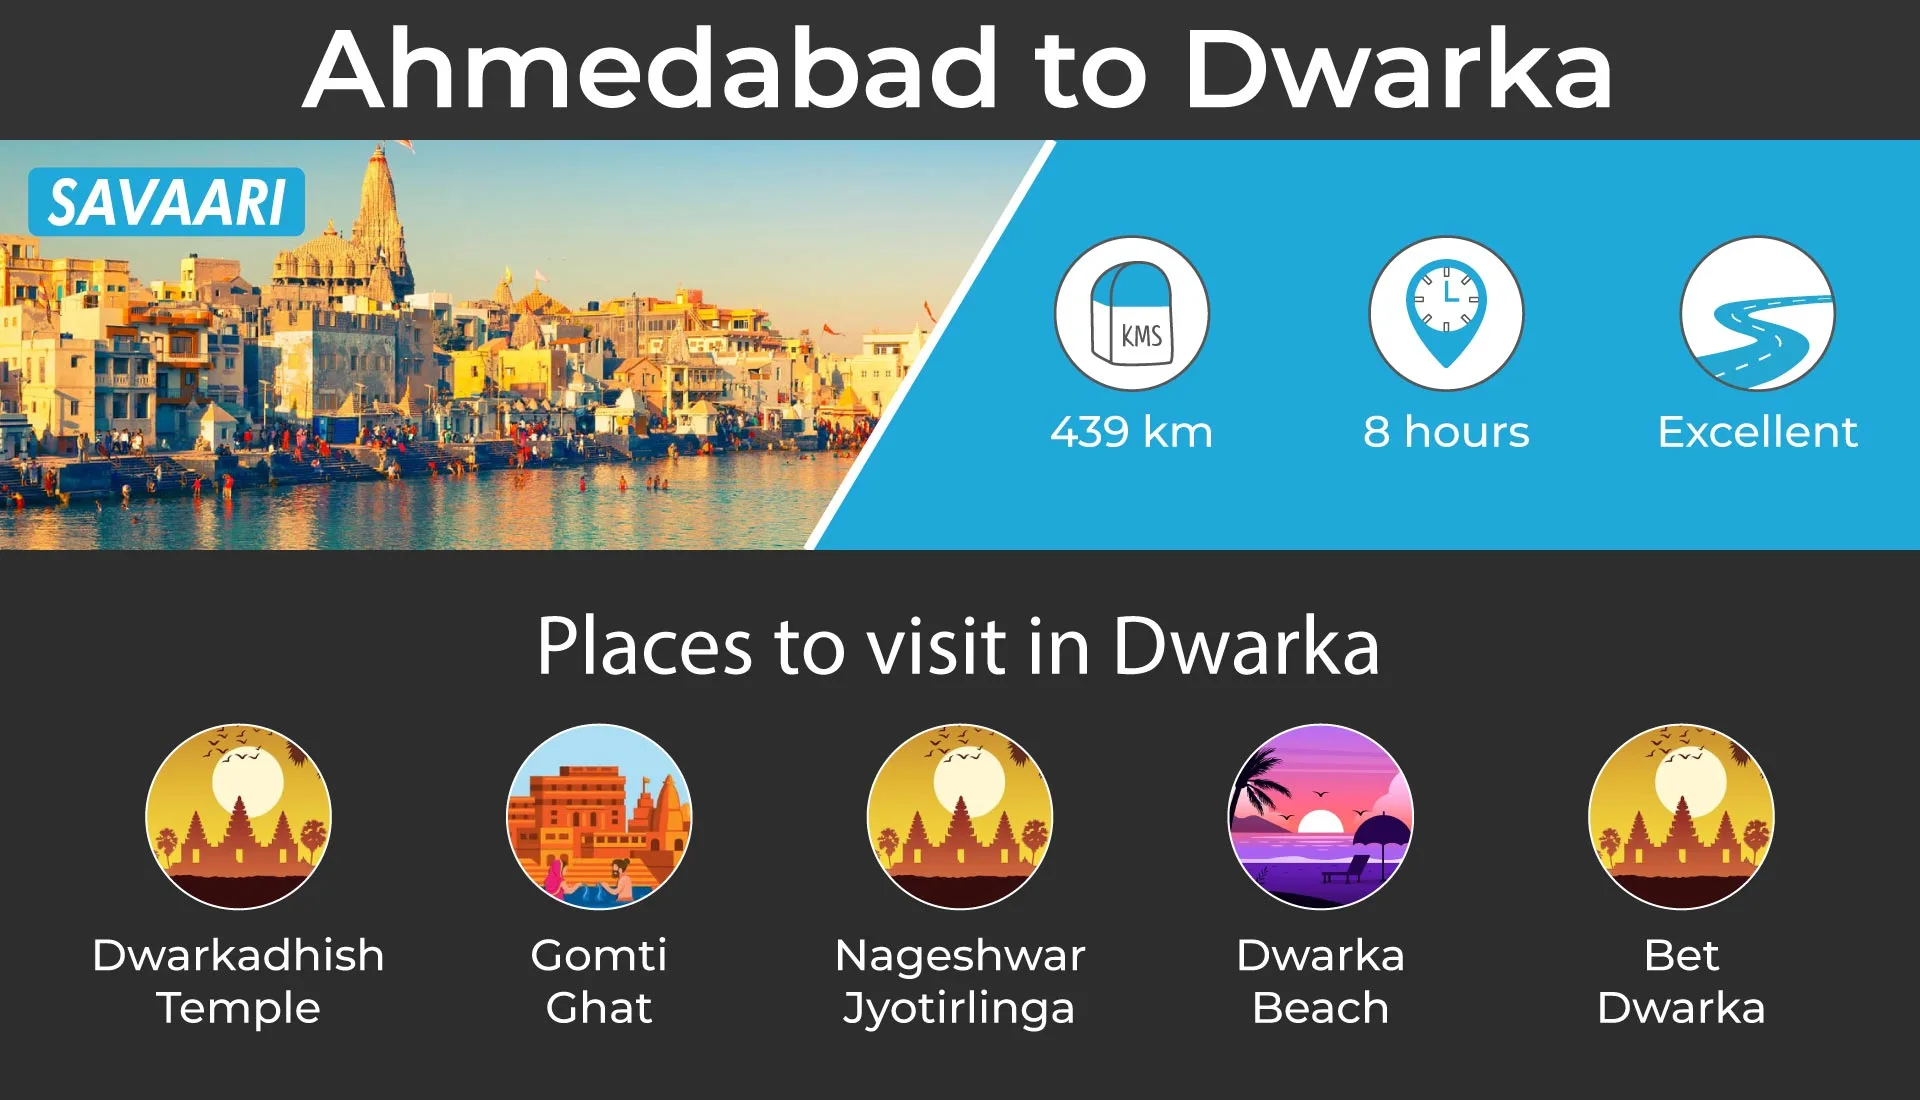 Ahmedabad to Dwarka roadtrip